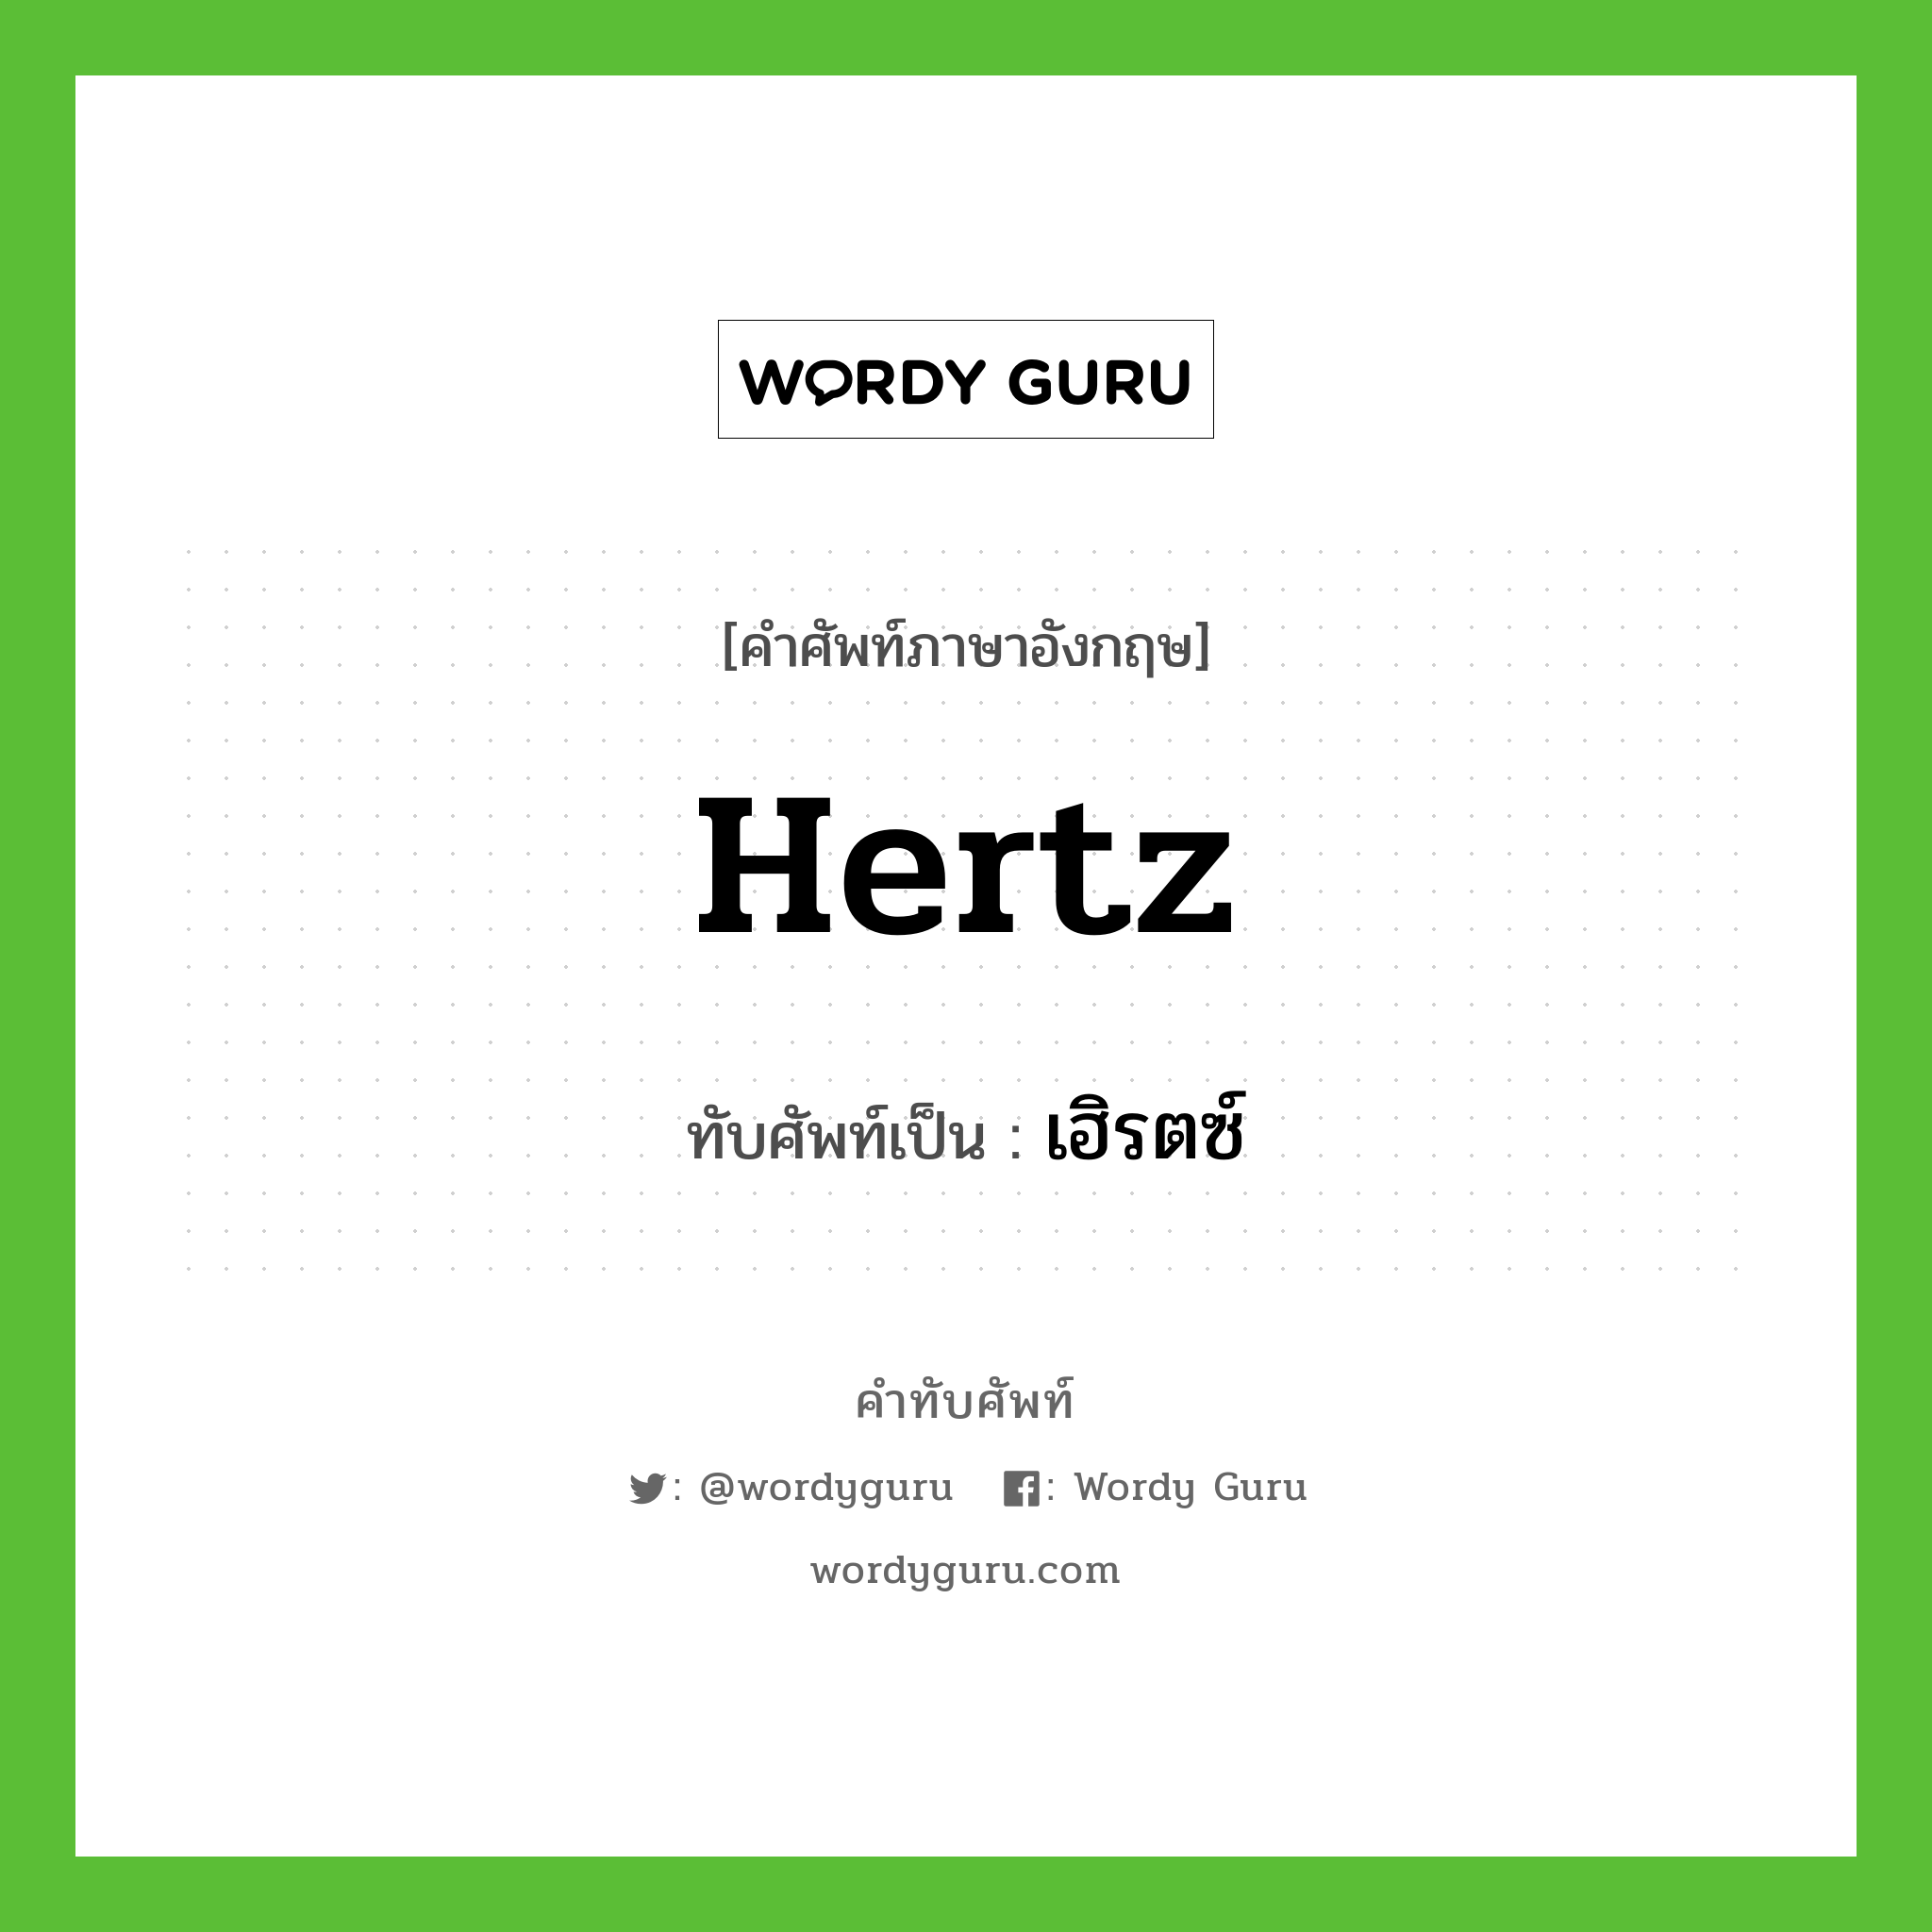 hertz เขียนเป็นคำไทยว่าอะไร?, คำศัพท์ภาษาอังกฤษ hertz ทับศัพท์เป็น เฮิรตซ์